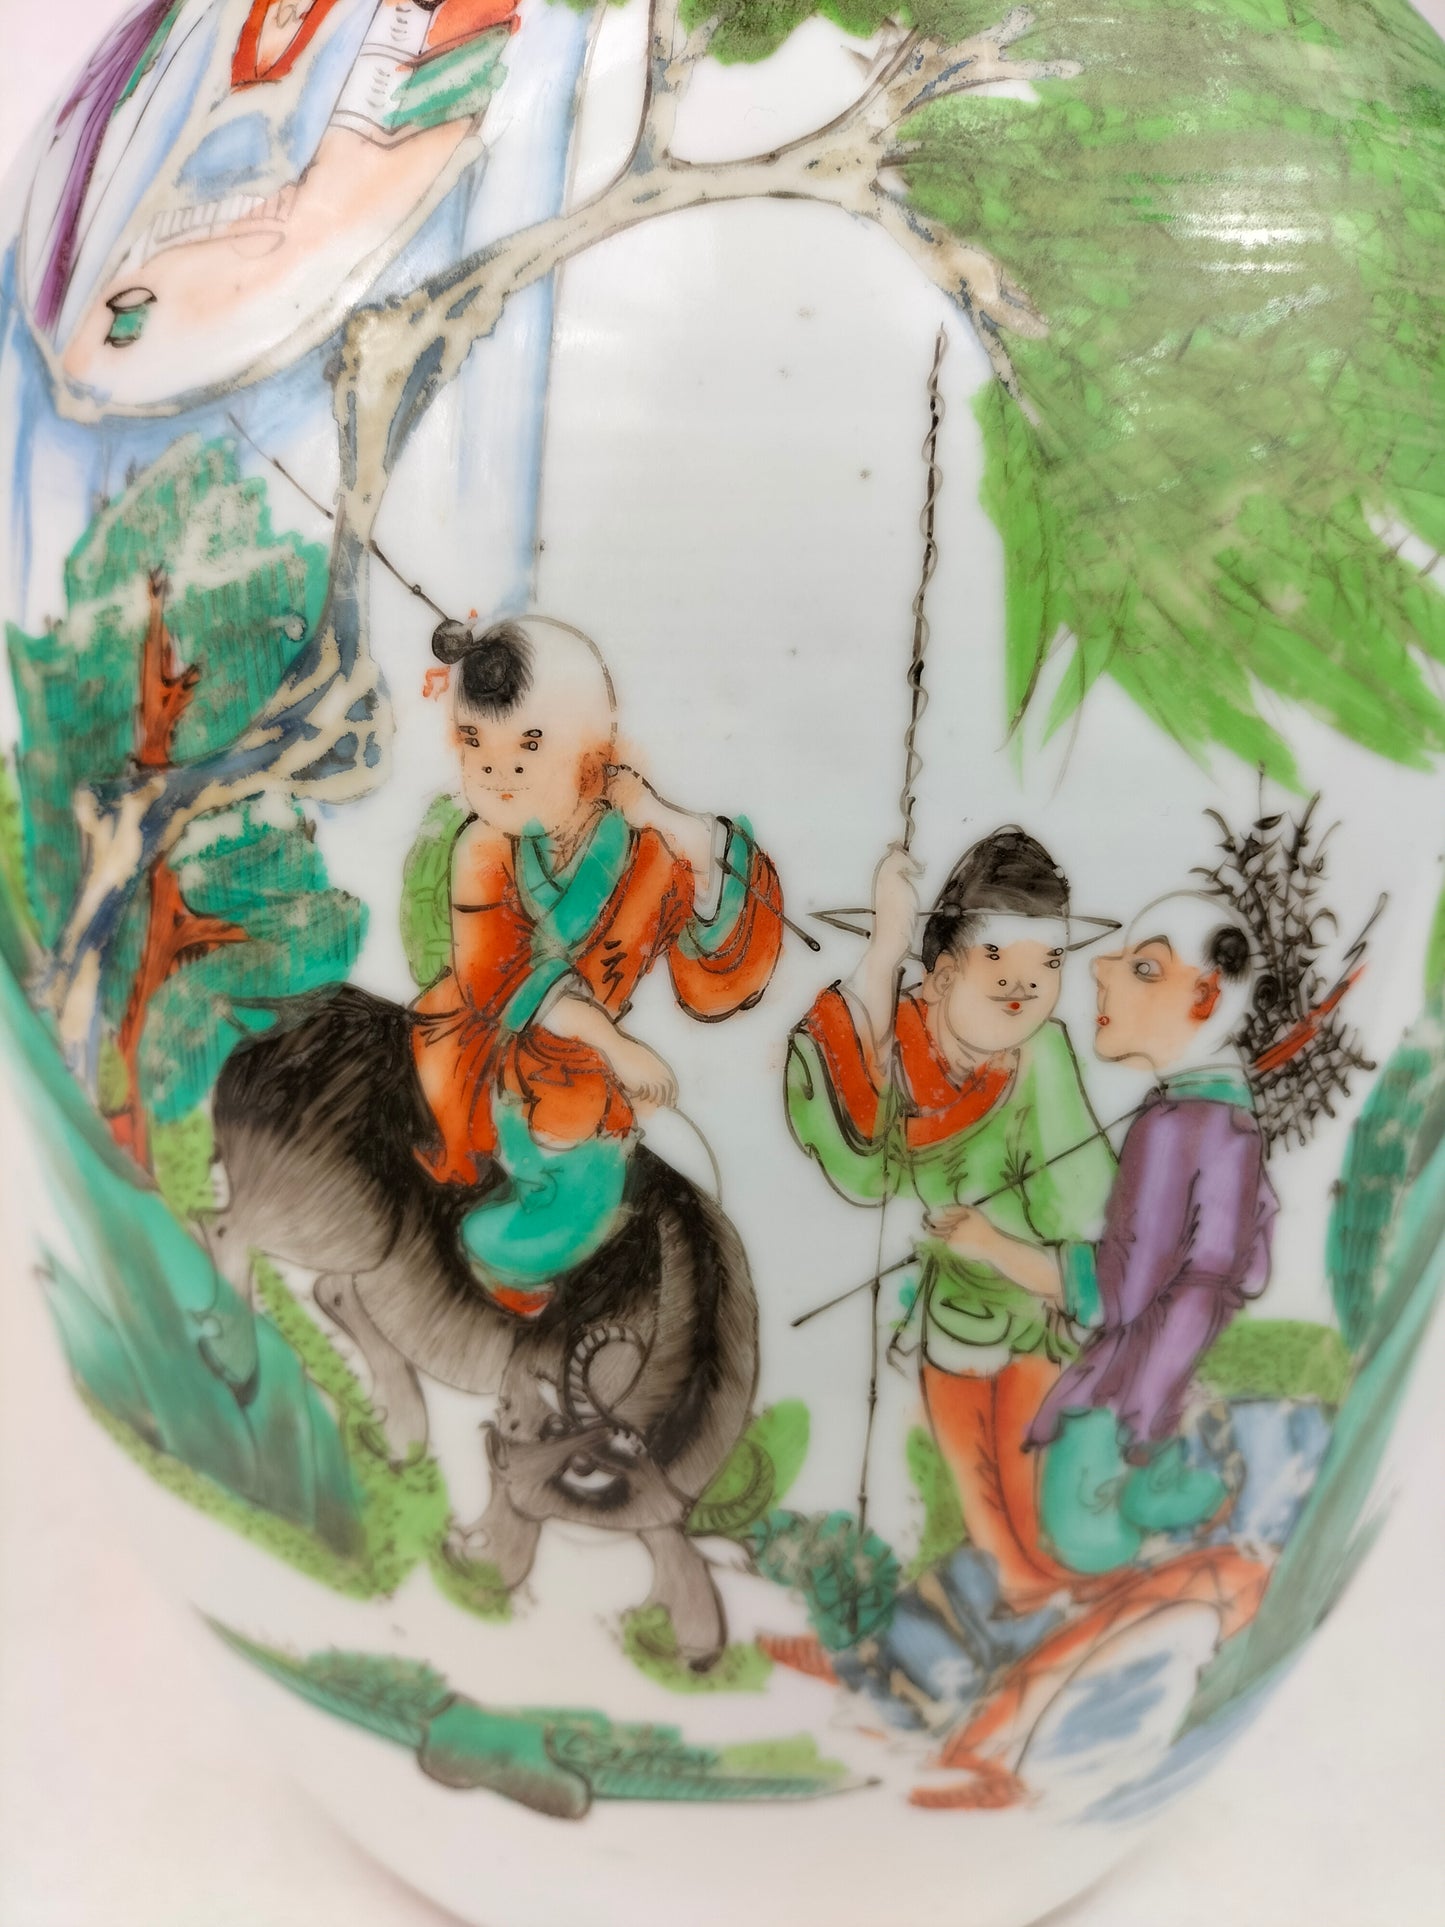 جرة زنجبيل صينية قديمة مزينة بصور أطفال وجاموس ماء // فترة الجمهورية (1912-1949)